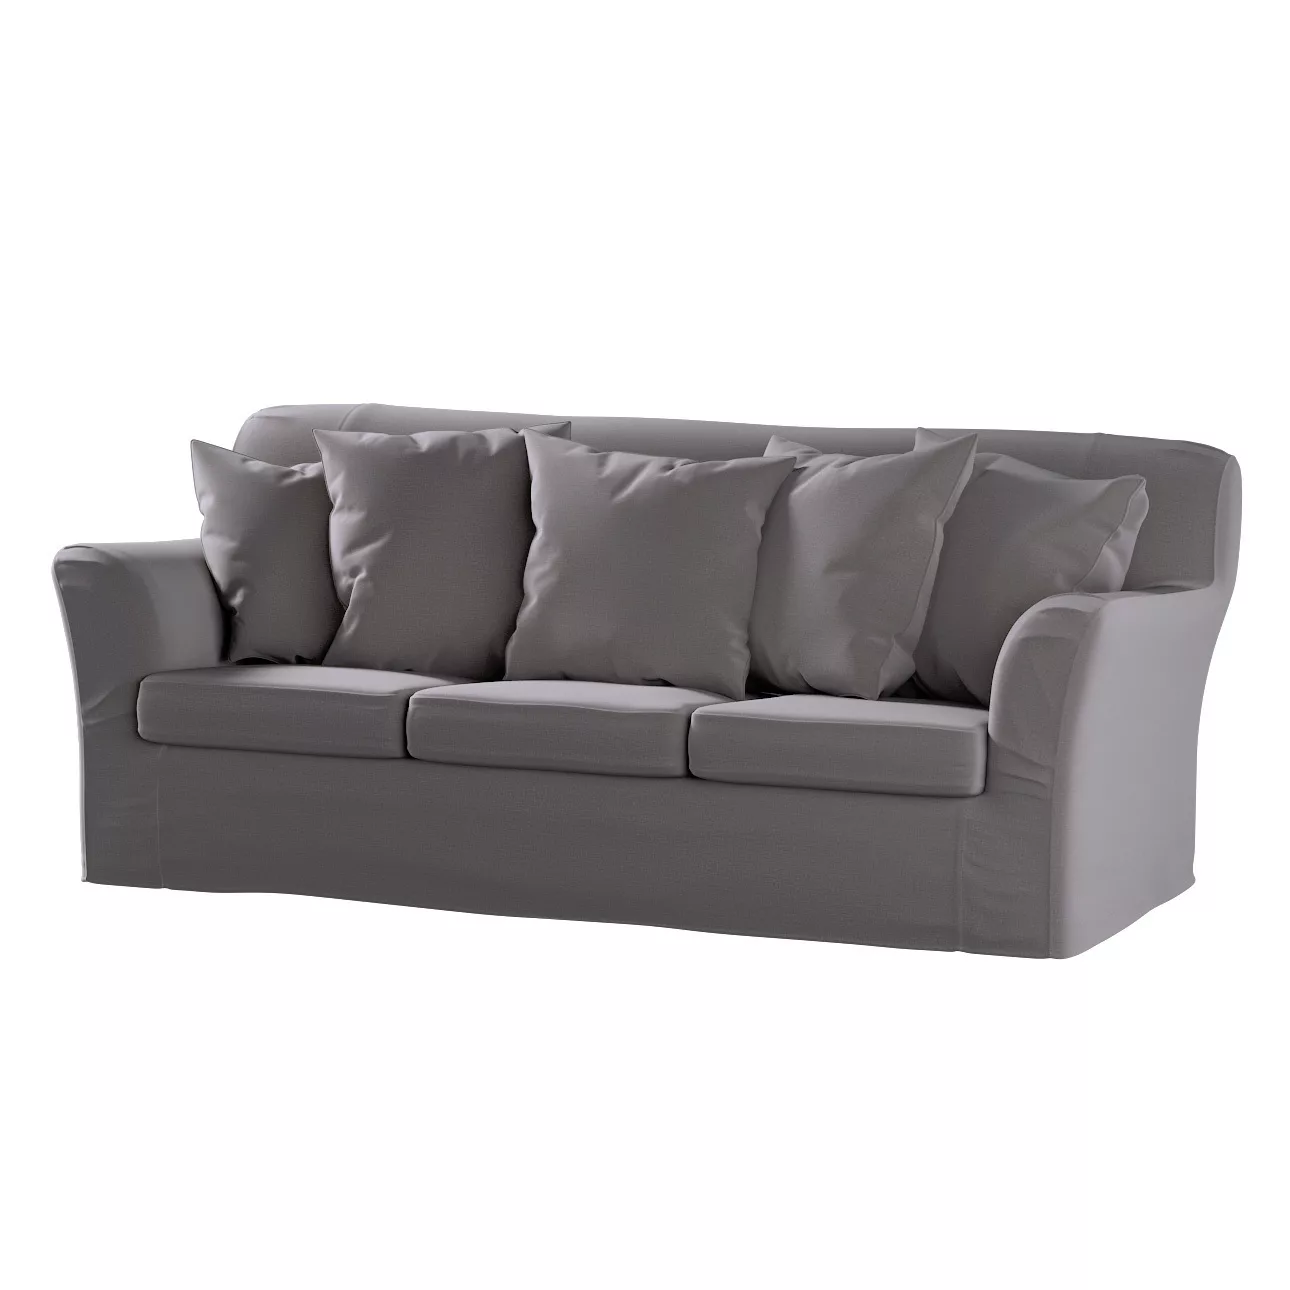 Bezug für Tomelilla 3-Sitzer Sofa nicht ausklappbar, braun, Sofahusse, Tome günstig online kaufen